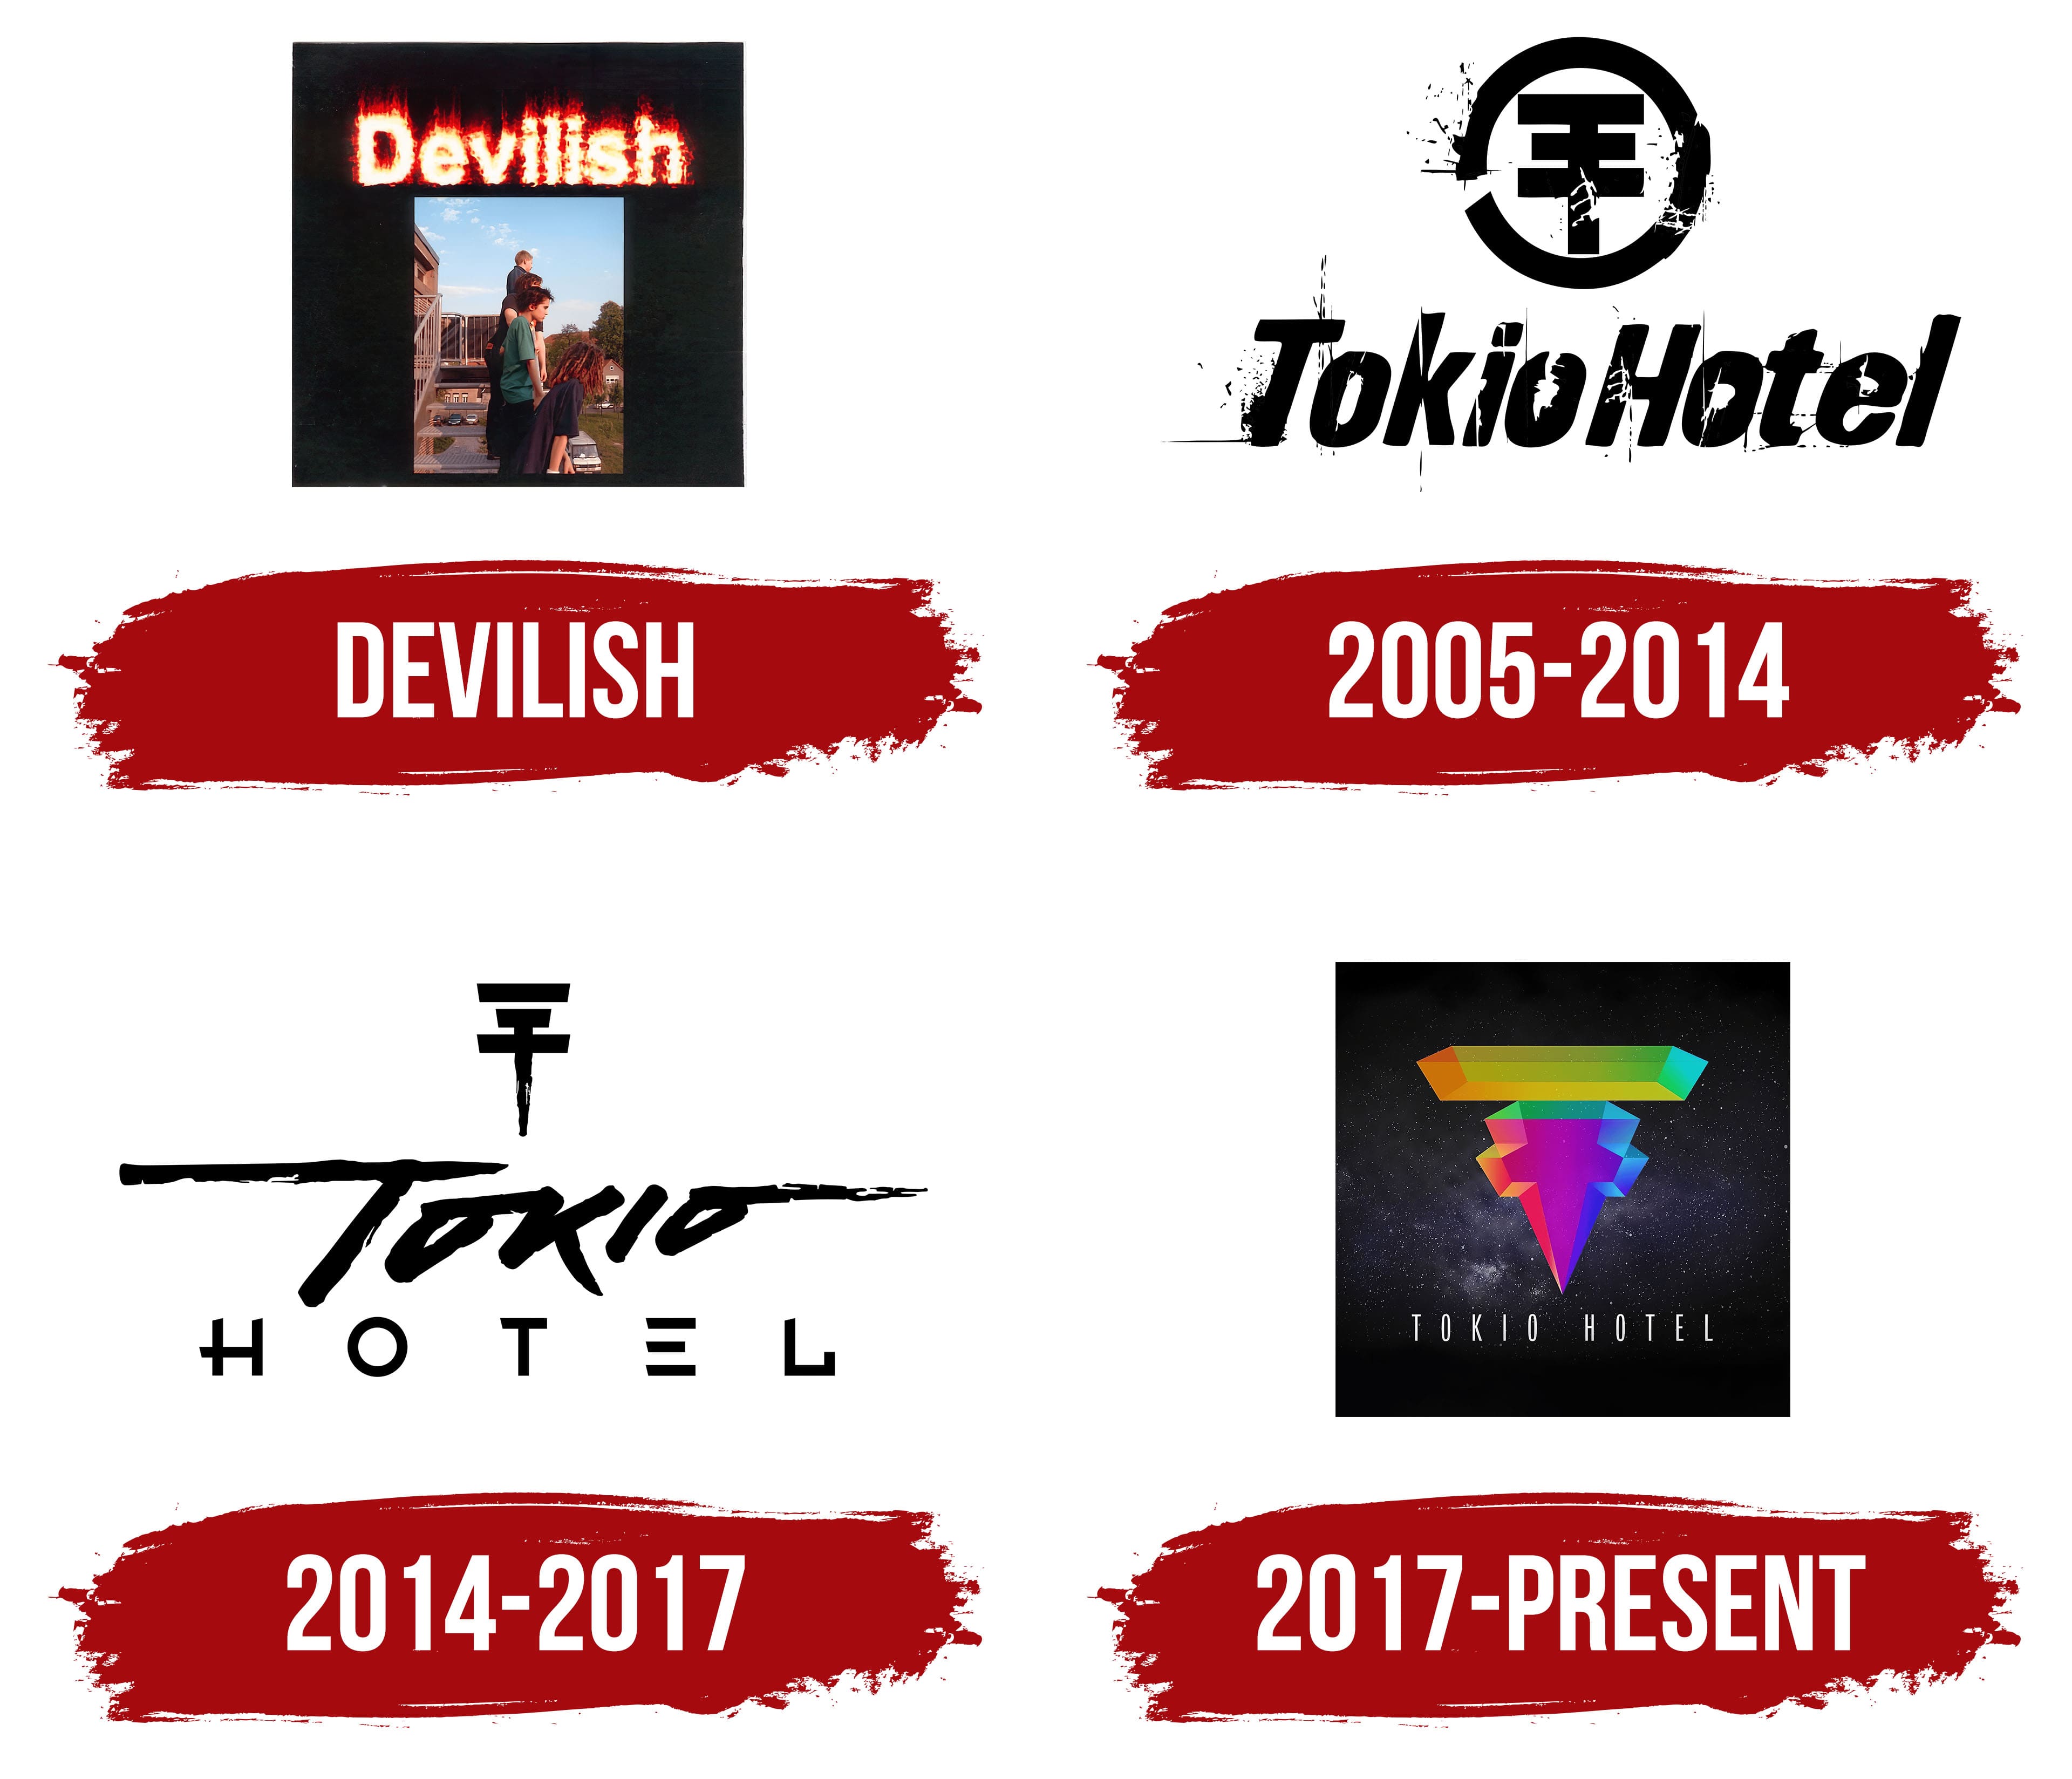 Tokio Hotel  Tokio hotel, Tokio, Tokyo hotels